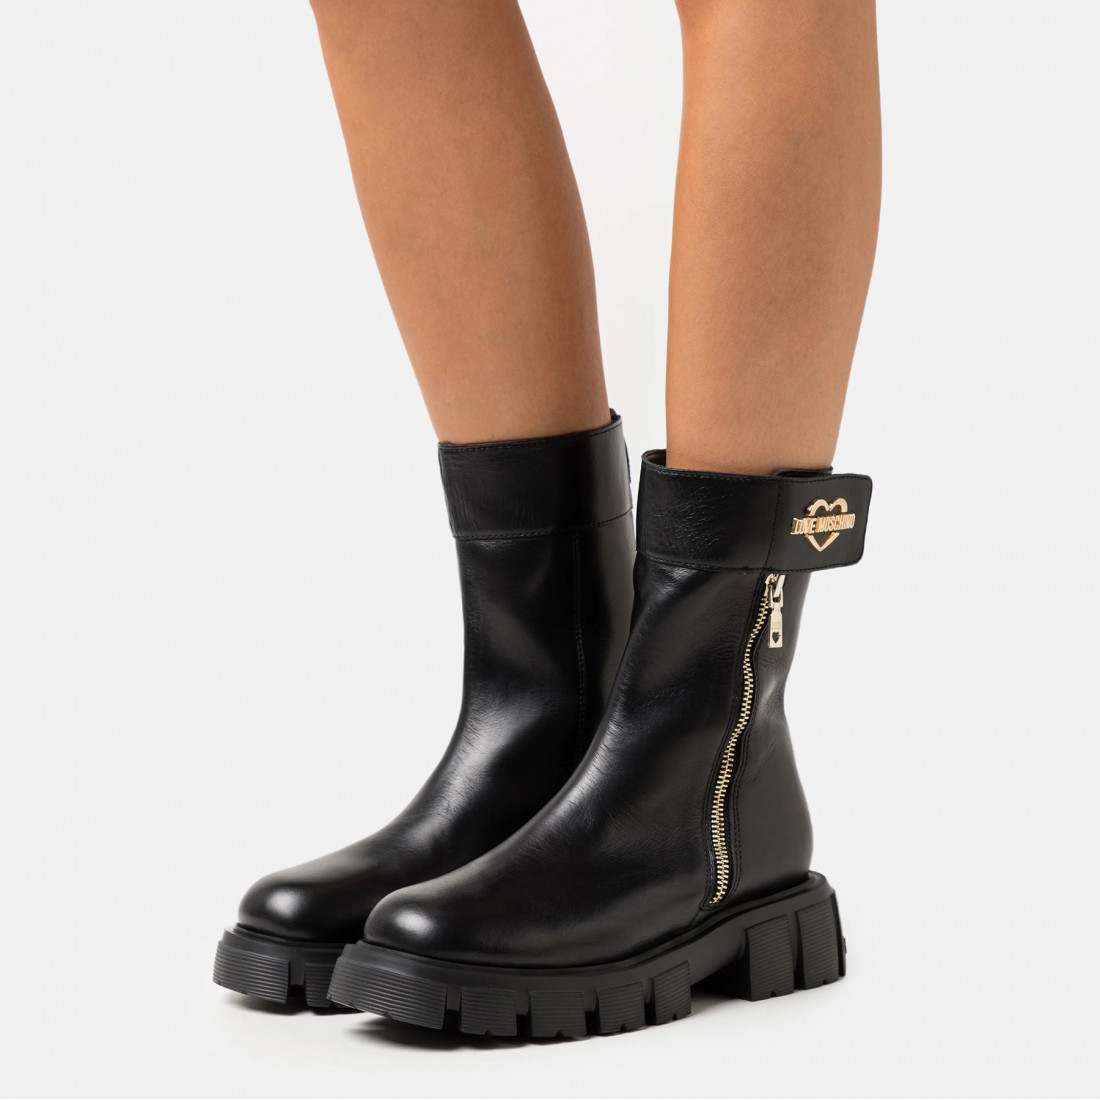 Rechtdoor Certificaat alleen Love Moschino women's black ankle boots with side zip